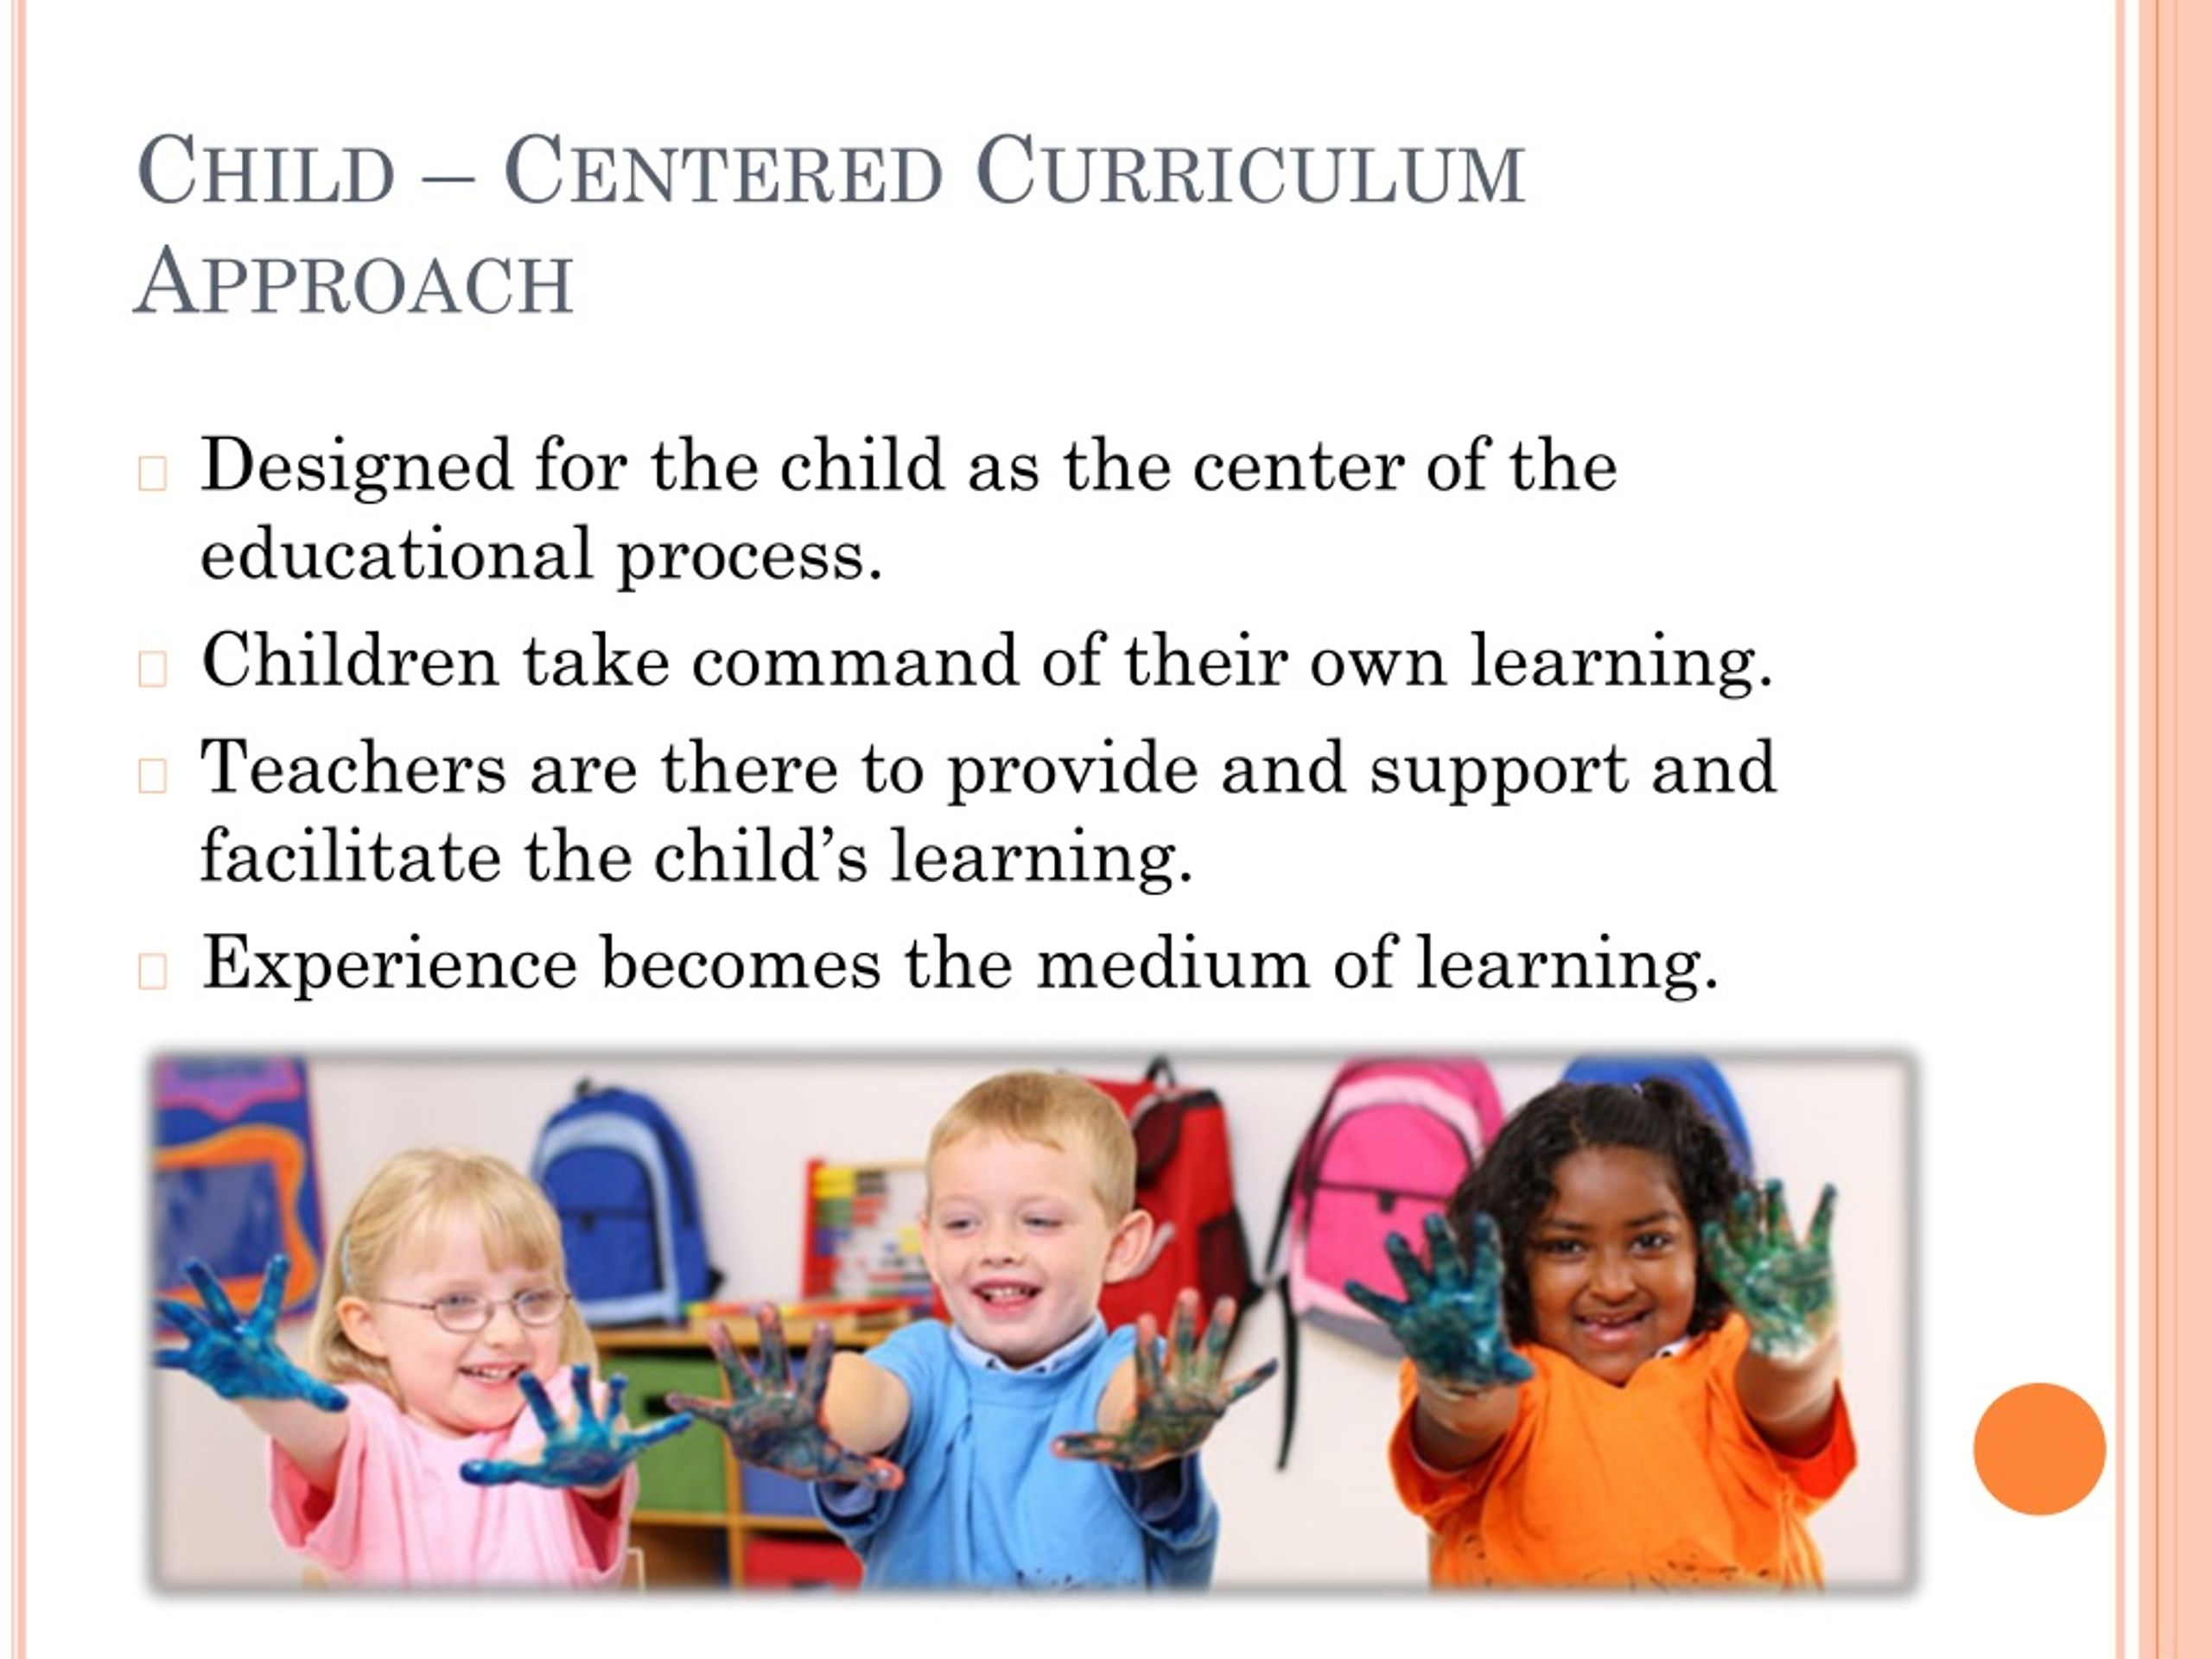 modern child centered education ppt